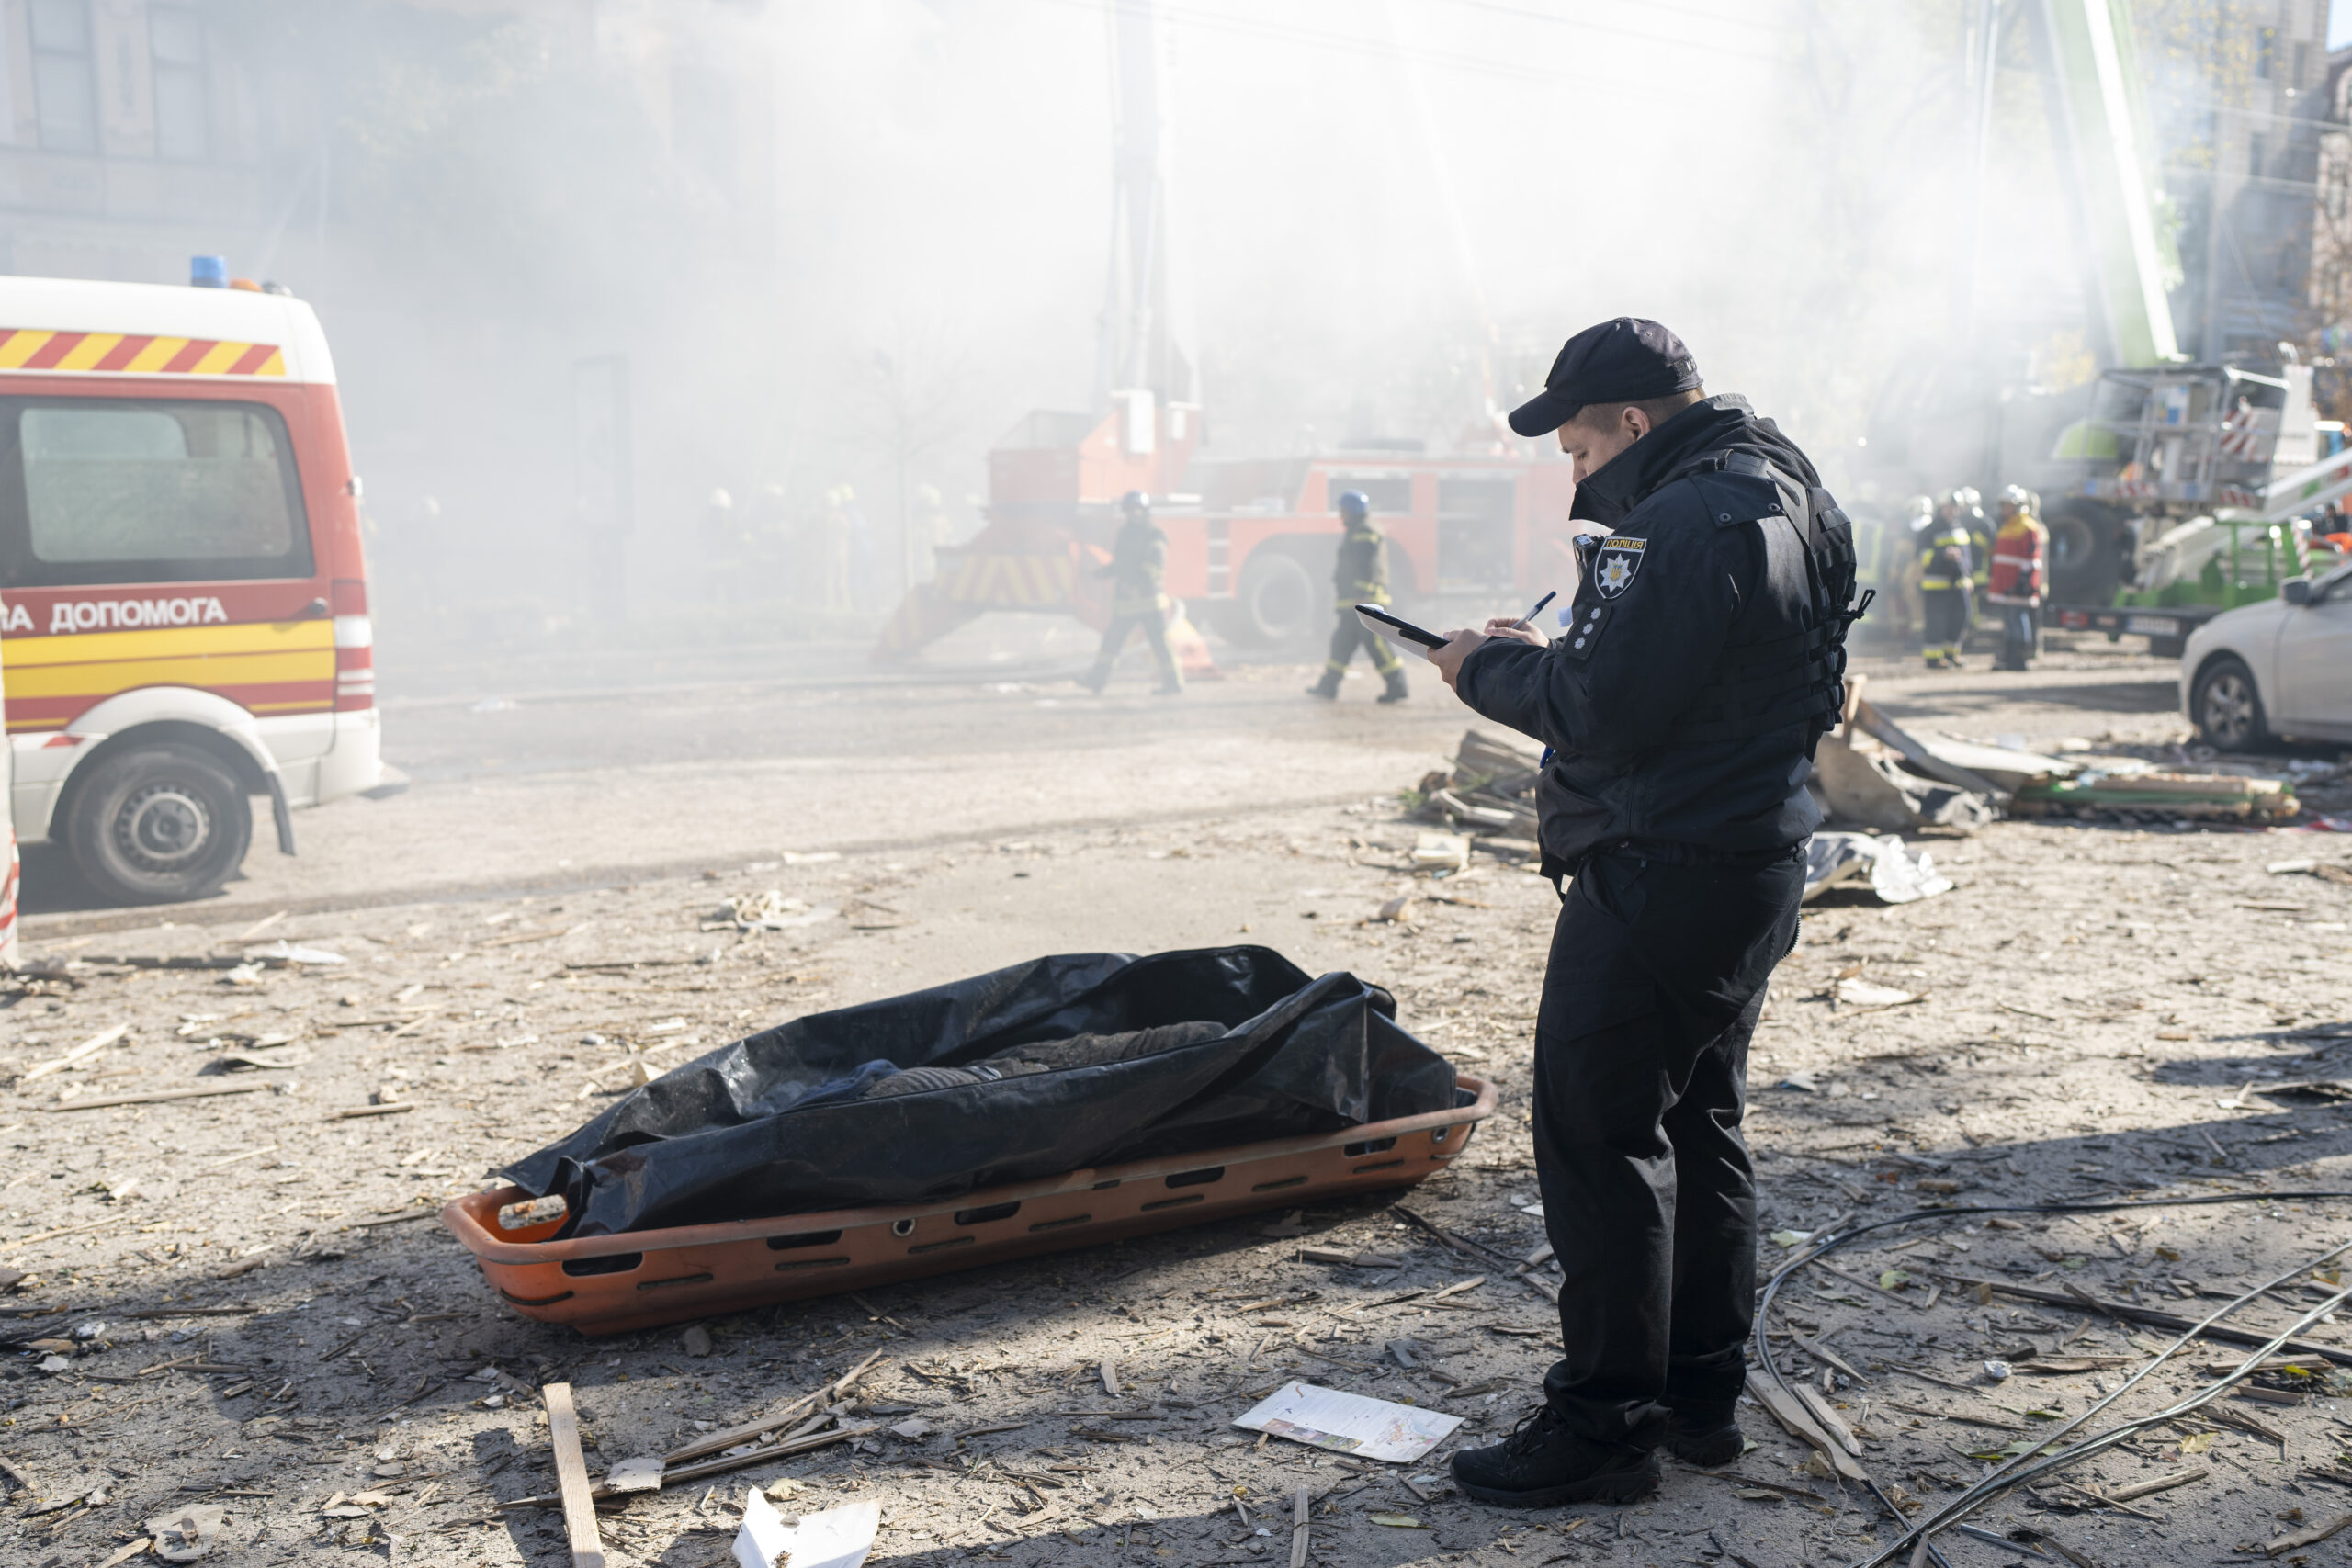 Ein Polizist steht neben der Leiche eines Mannes, der durch eine Drohne getötet wurde.